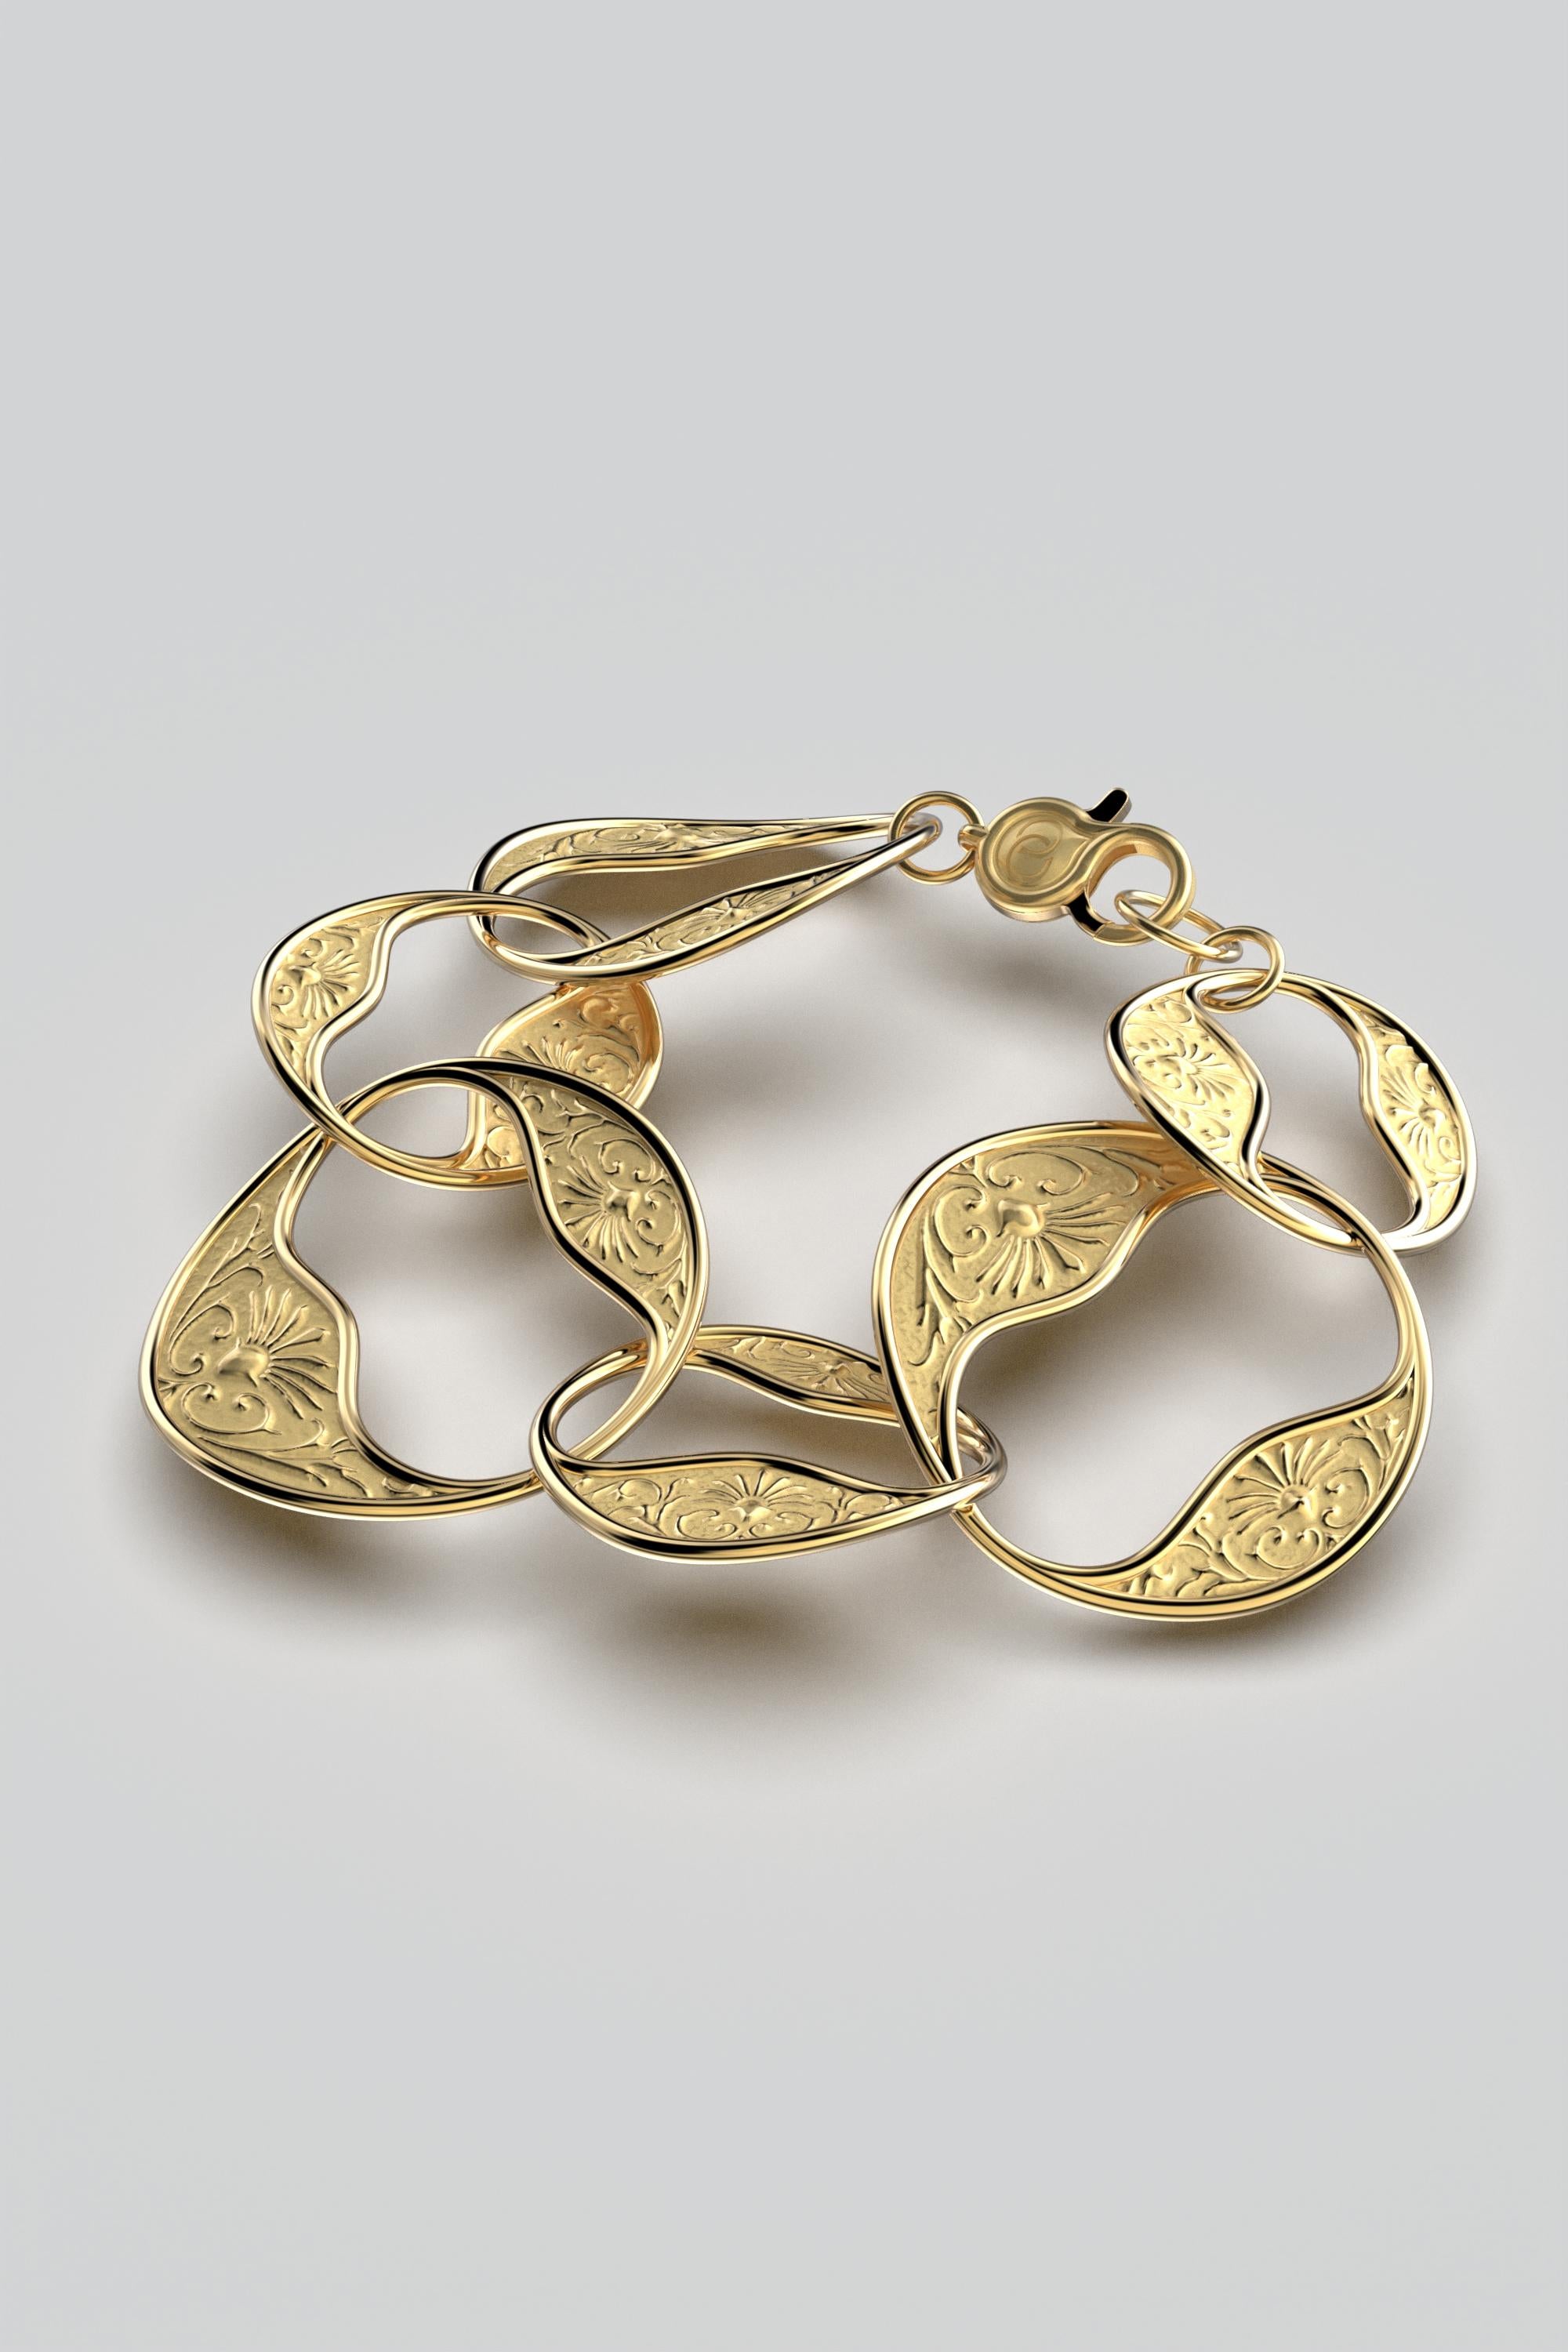 Italienischer Schmuck auf Bestellung.
Opulentes 18k Gold Barock Armband, hergestellt in Italien - Wählen Sie Gelb-, Weiß- oder Roségold. 7,28